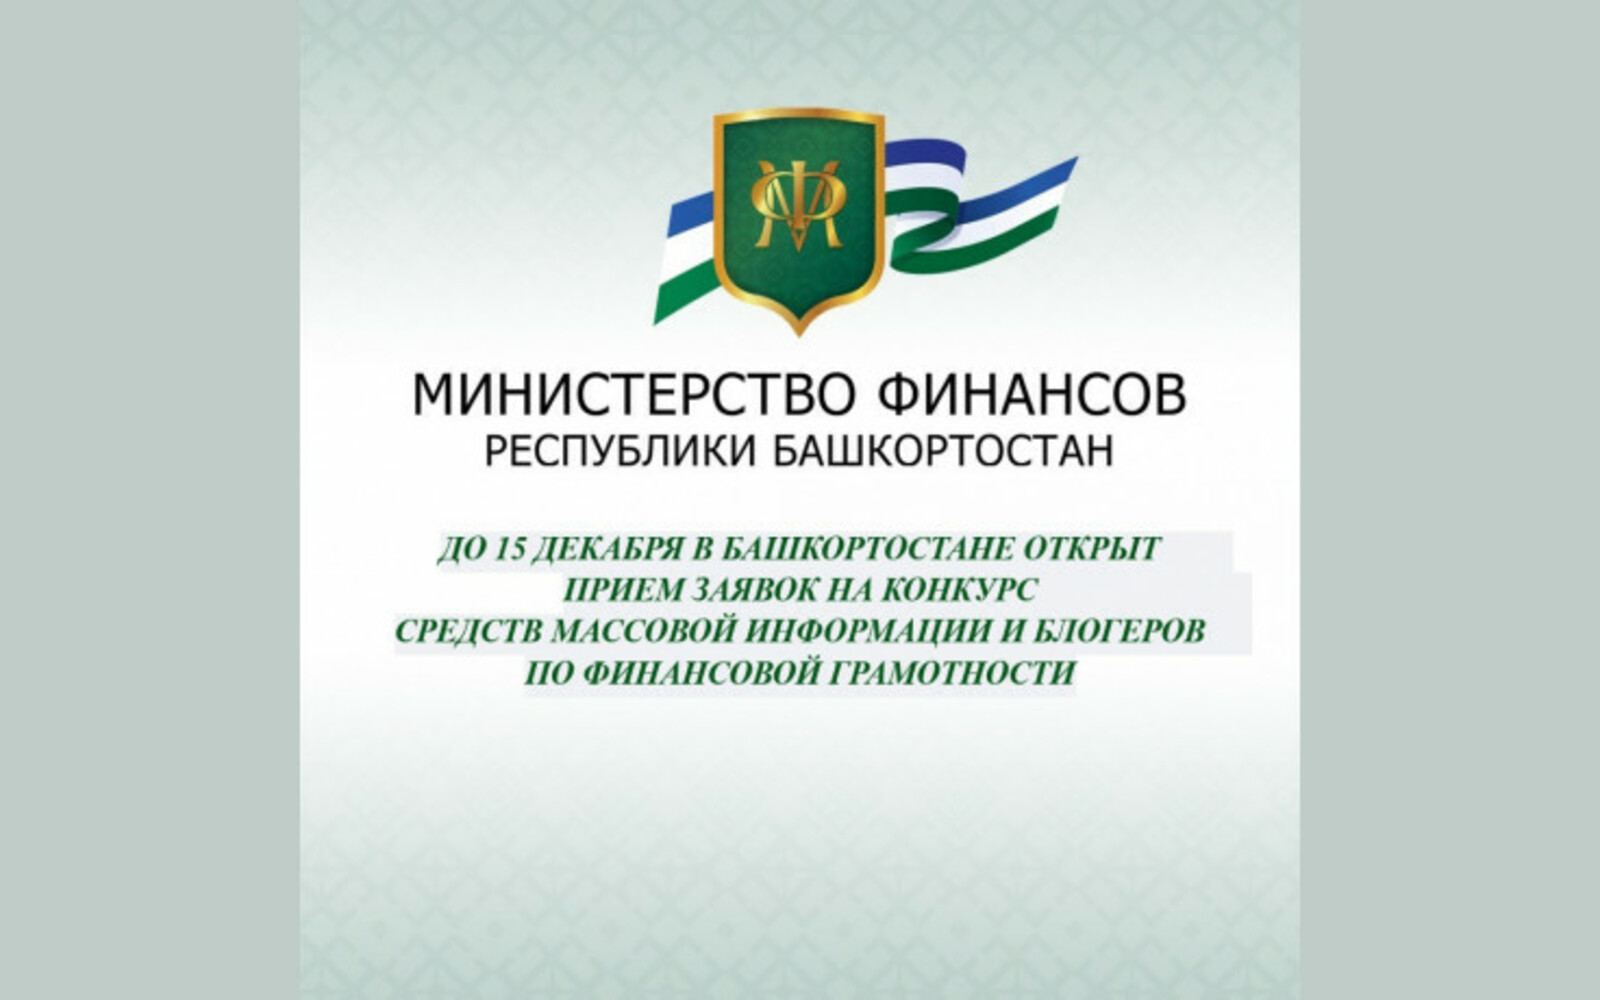 До 15 декабря в Башкортостане открыт прием заявок на конкурс СМИ и блогеров по финансовой грамотности